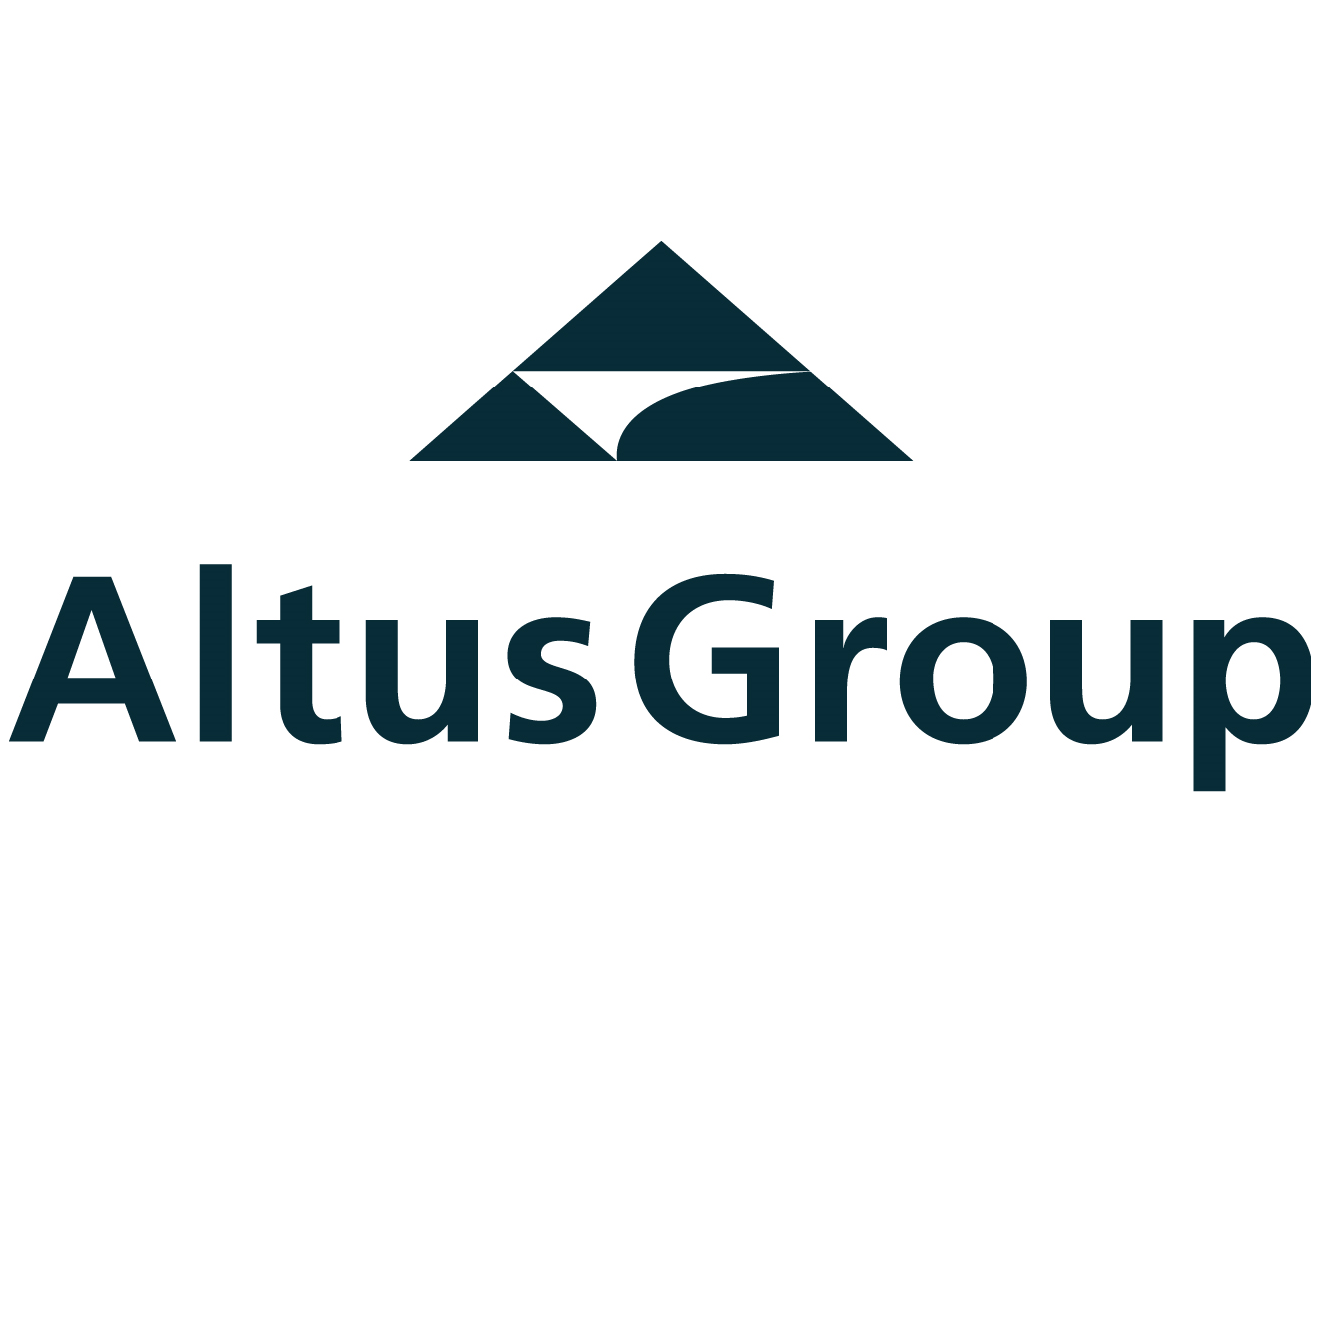 Altus Group.